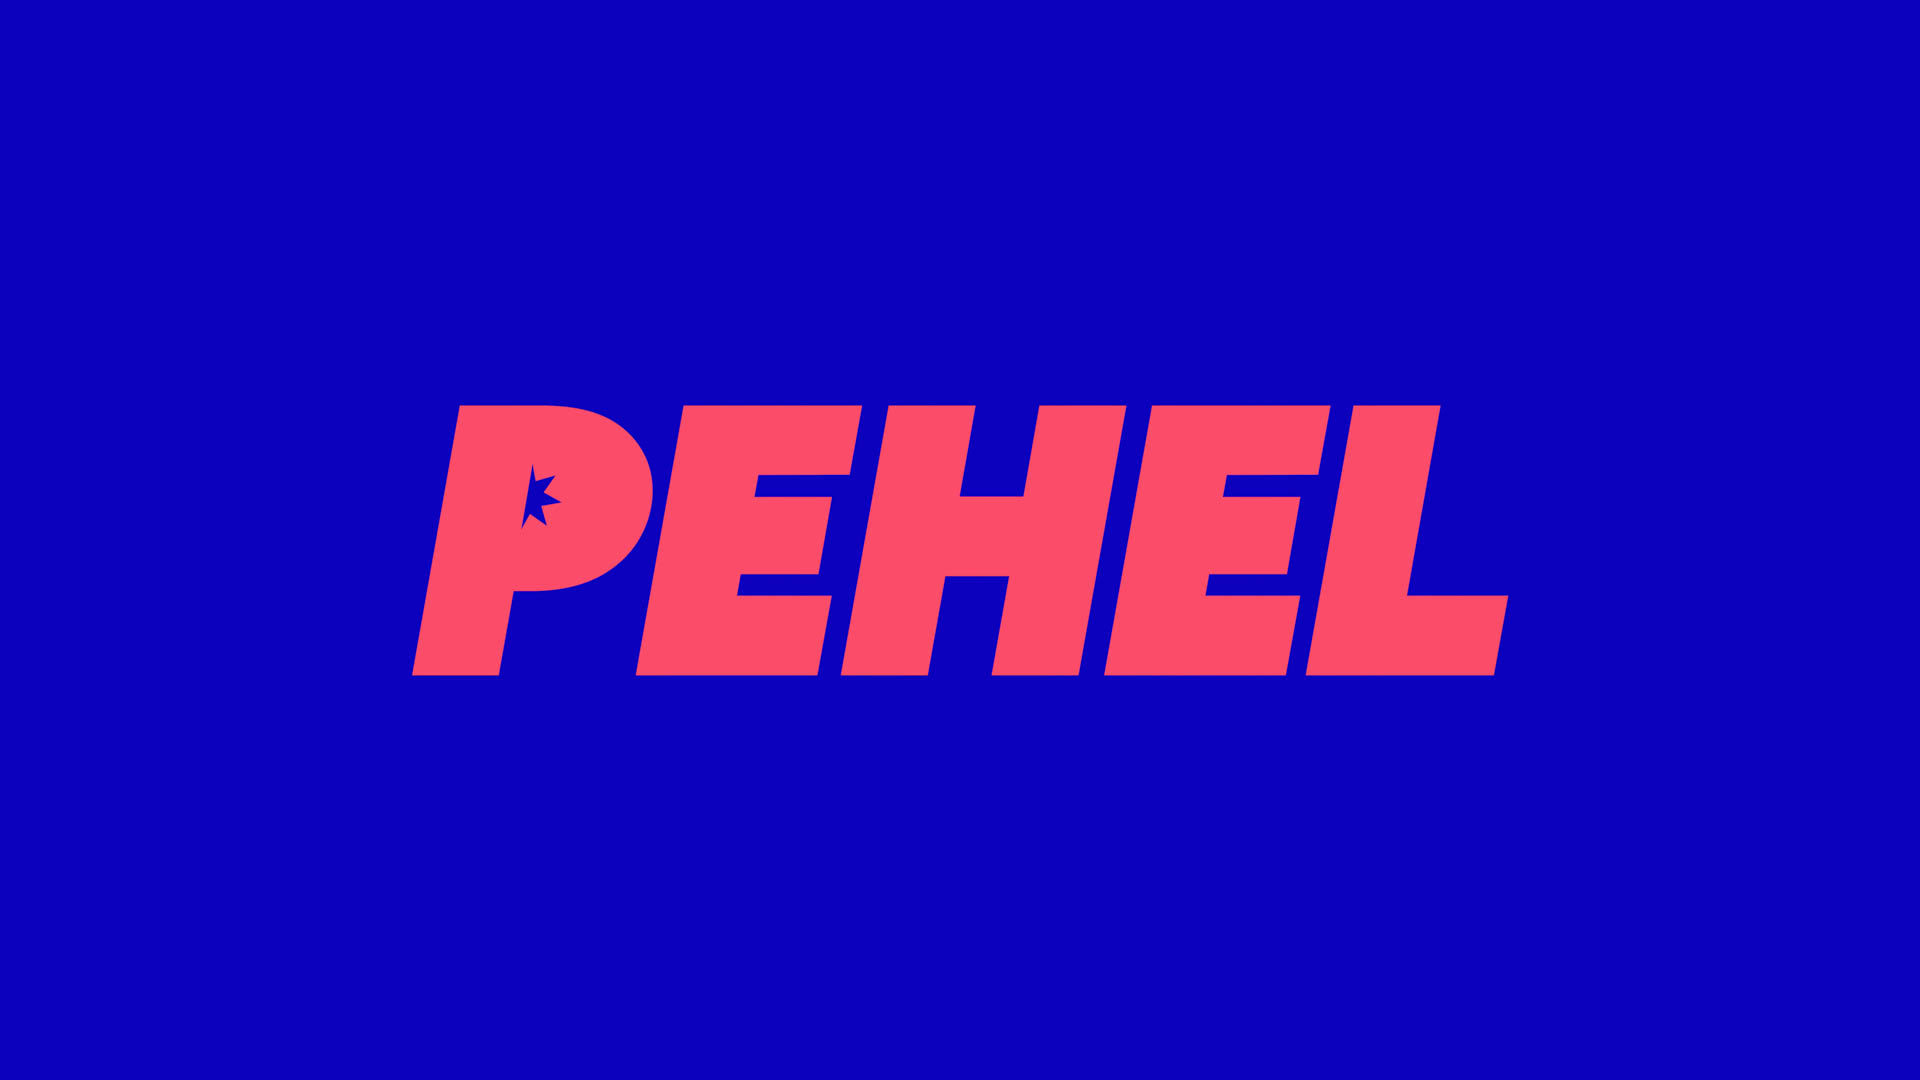 Pehel logo in orange against dark blue background